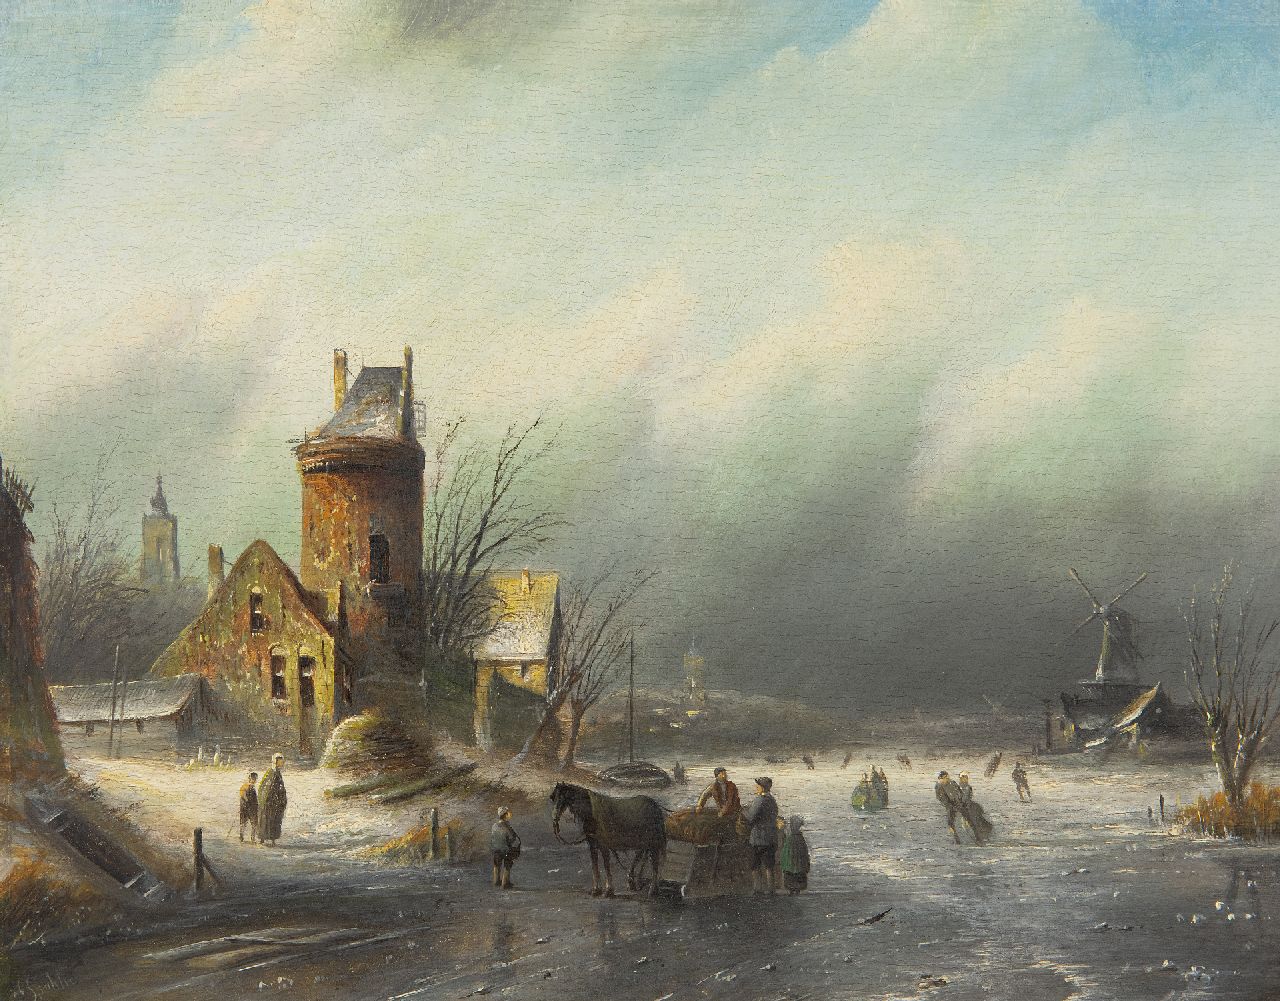 Spohler J.J.C.  | Jacob Jan Coenraad Spohler | Schilderijen te koop aangeboden | Winterlandschap met schaatsers op een rivier, olieverf op paneel 21,5 x 27,1 cm, gesigneerd linksonder